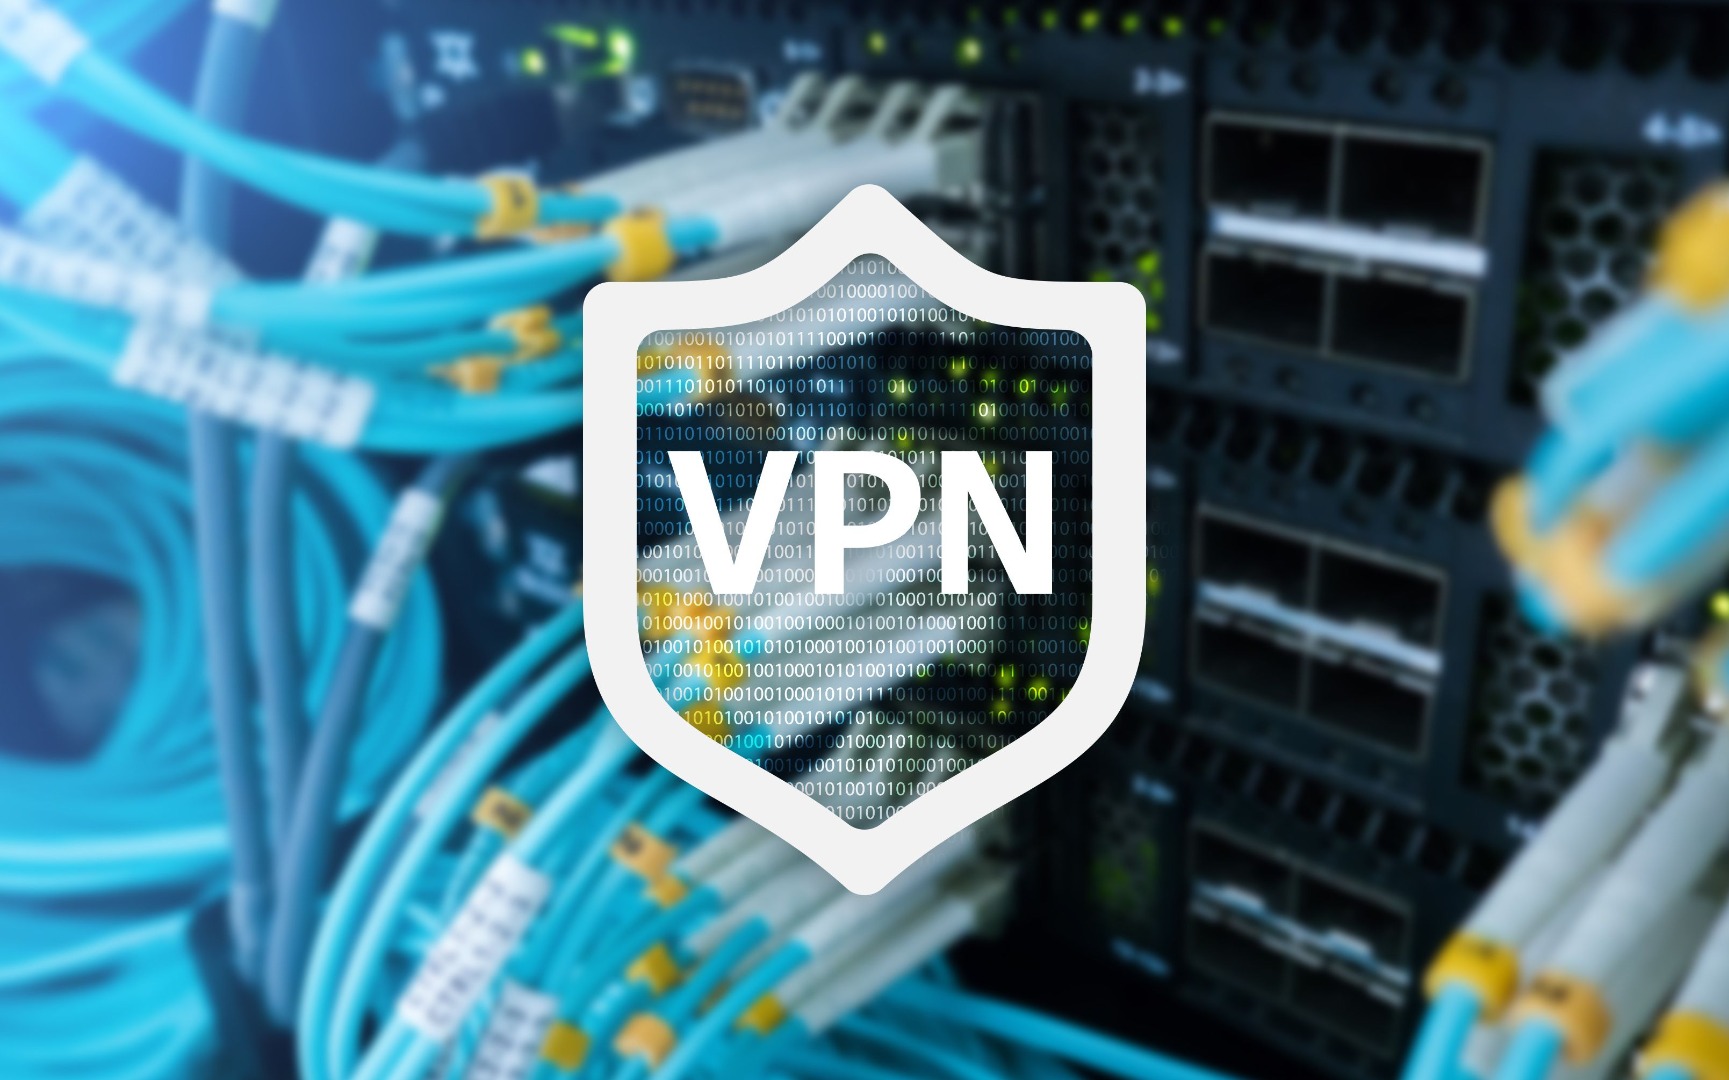 VPN uygulaması kullananlar dikkat!